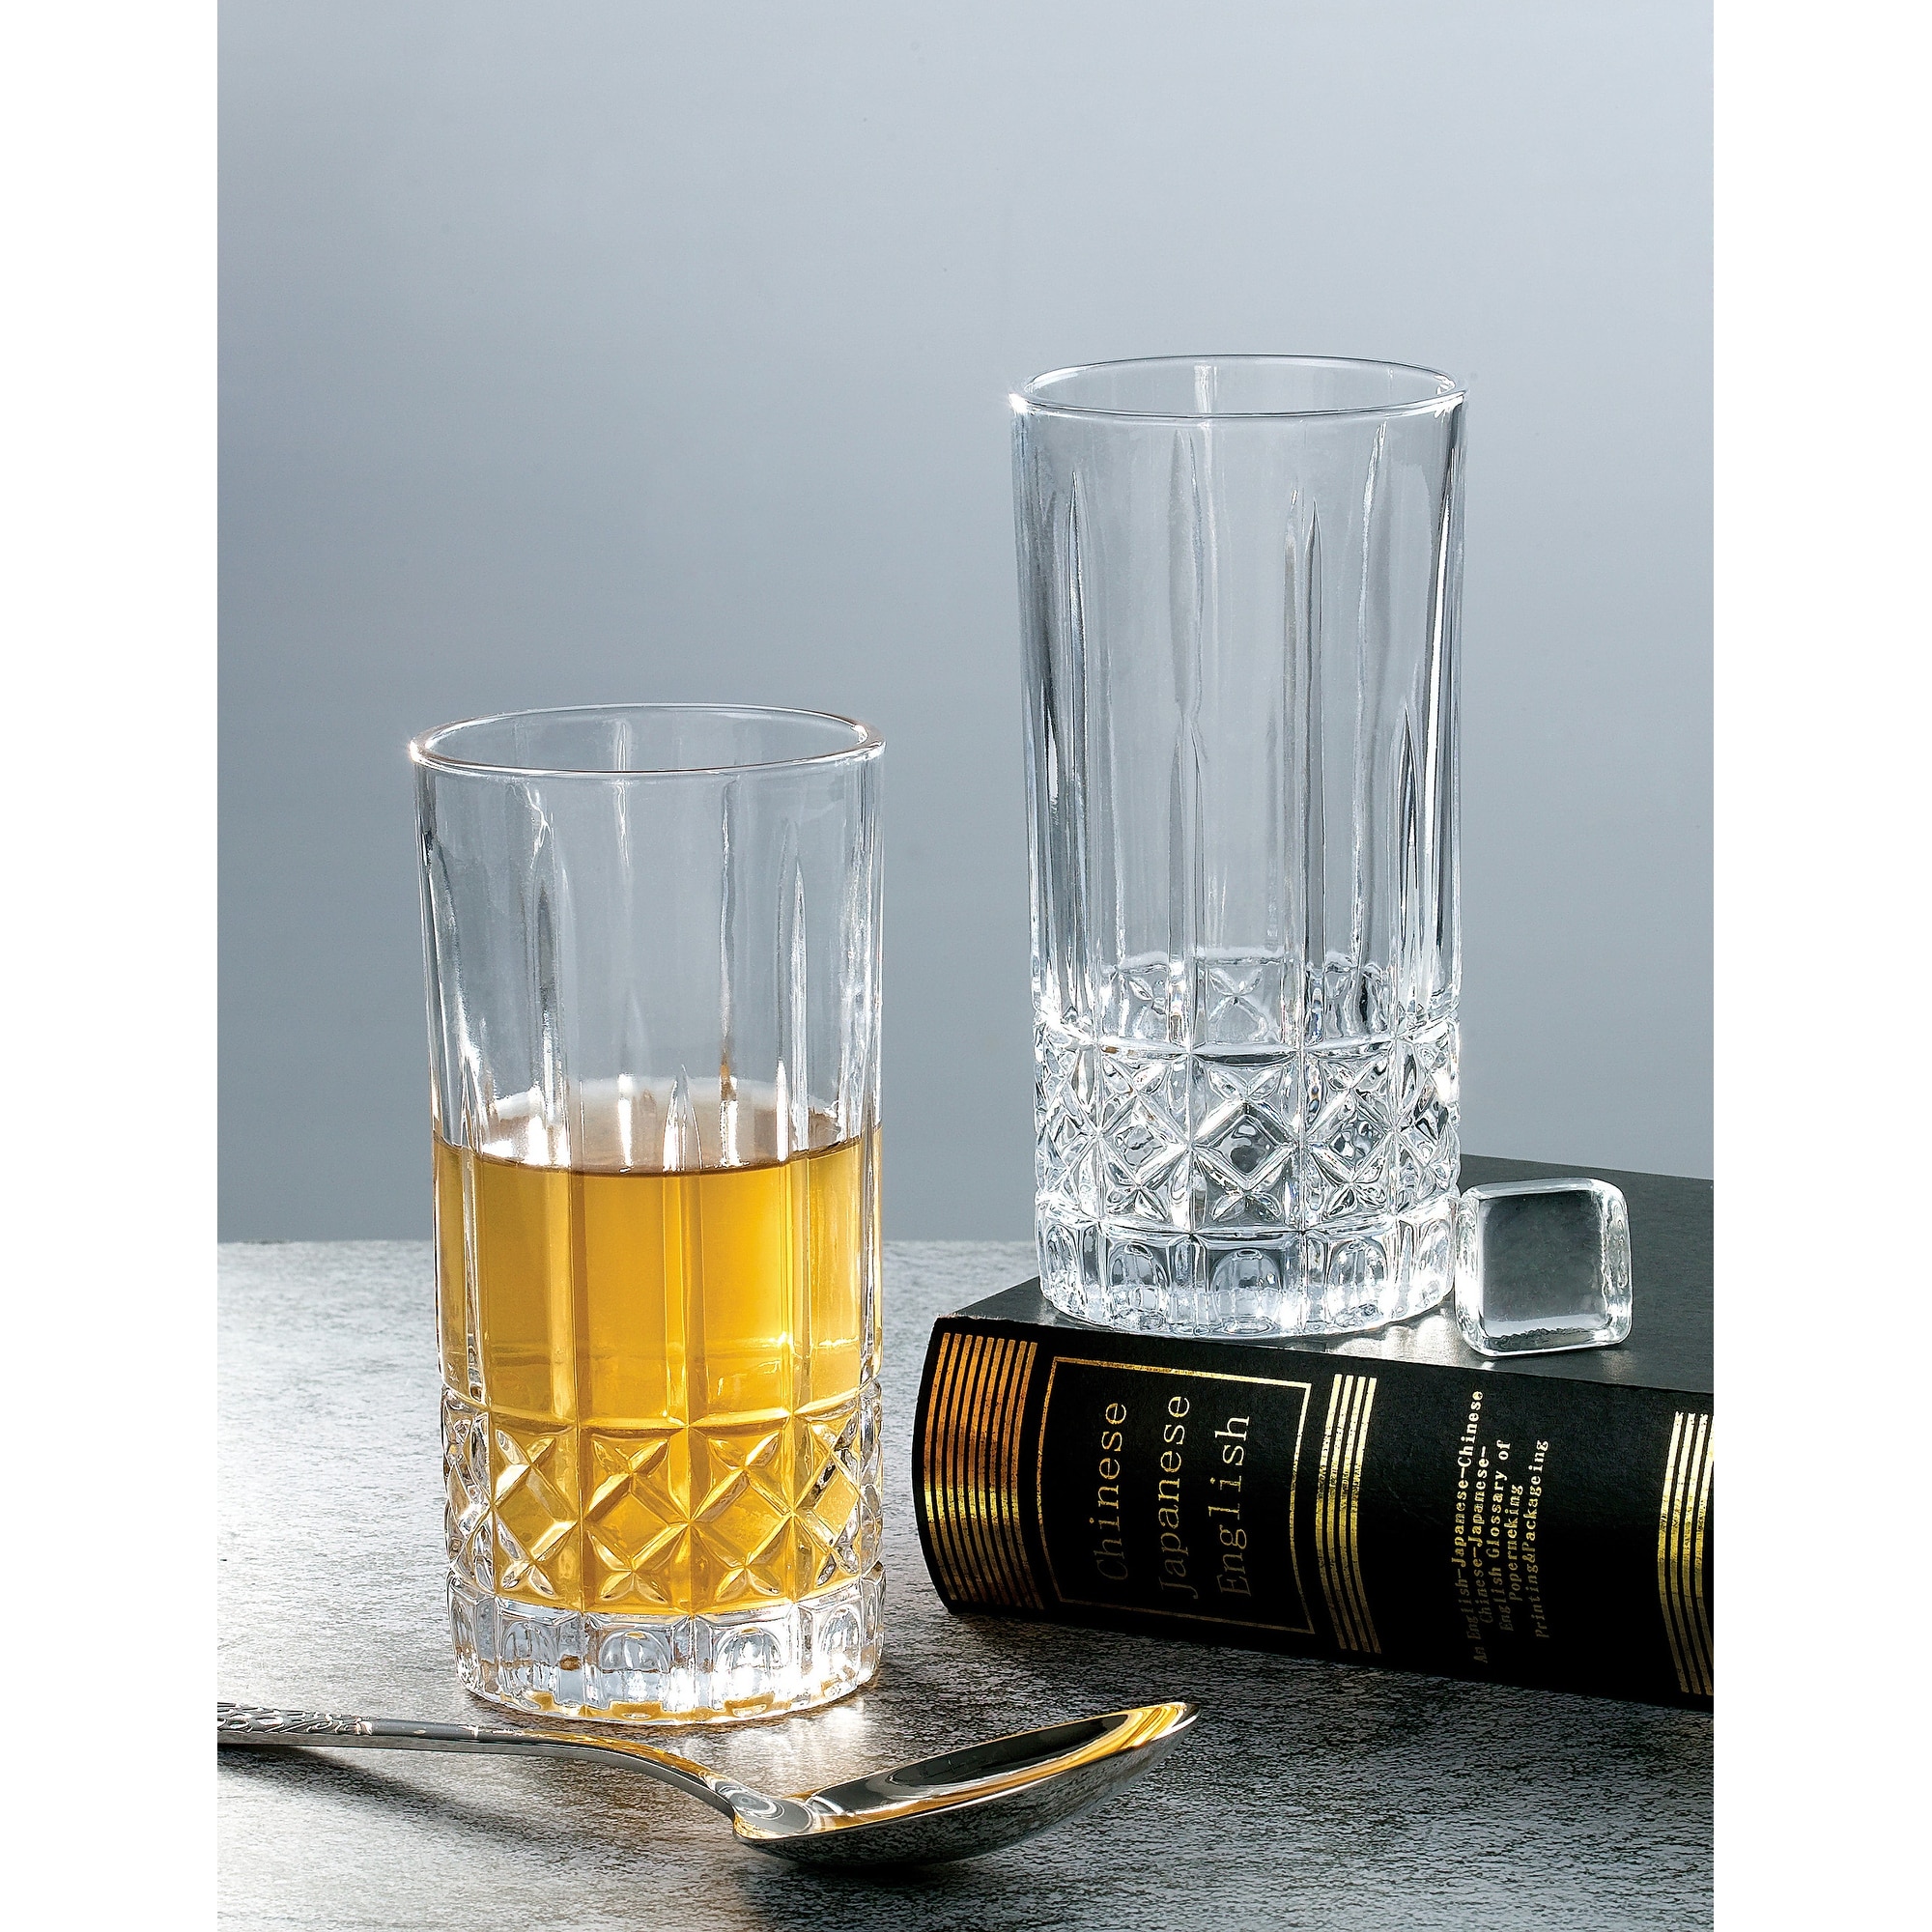 Lorren Home Trends Tall 12 Ounce Drinking Glass-Textured Cut Glass